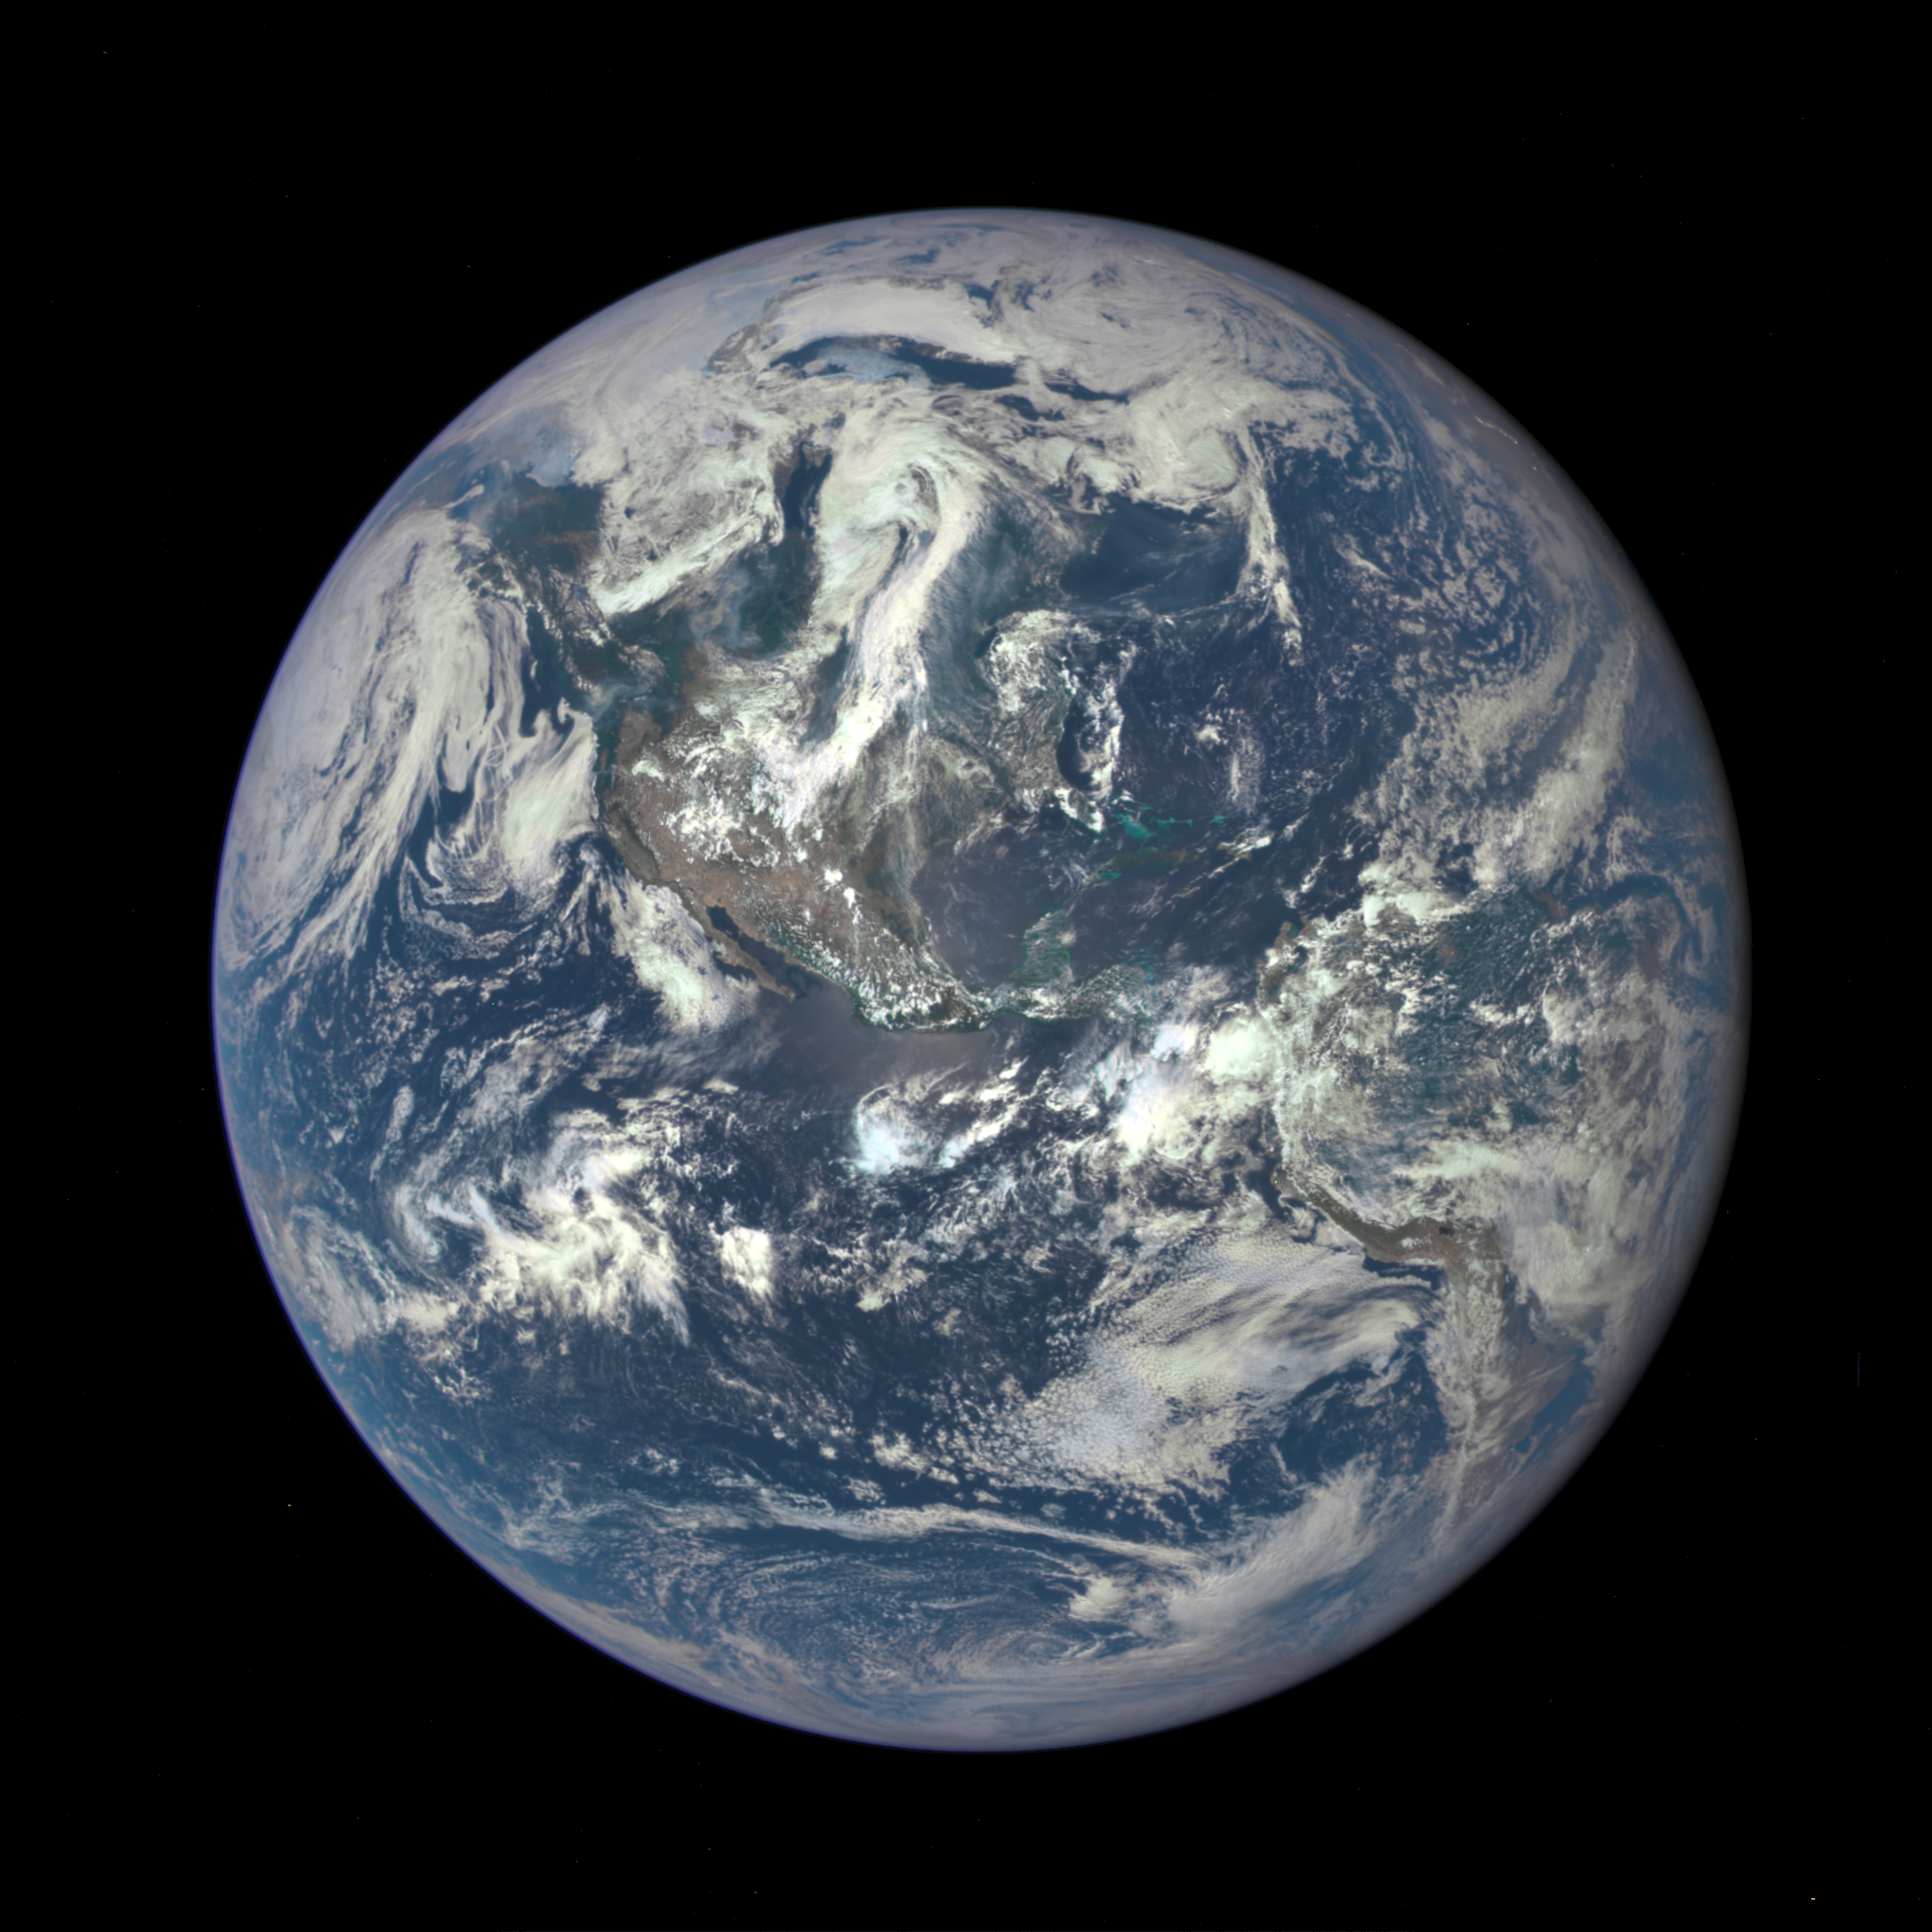 снимок Земли с расстояния в 1,6 млн километров